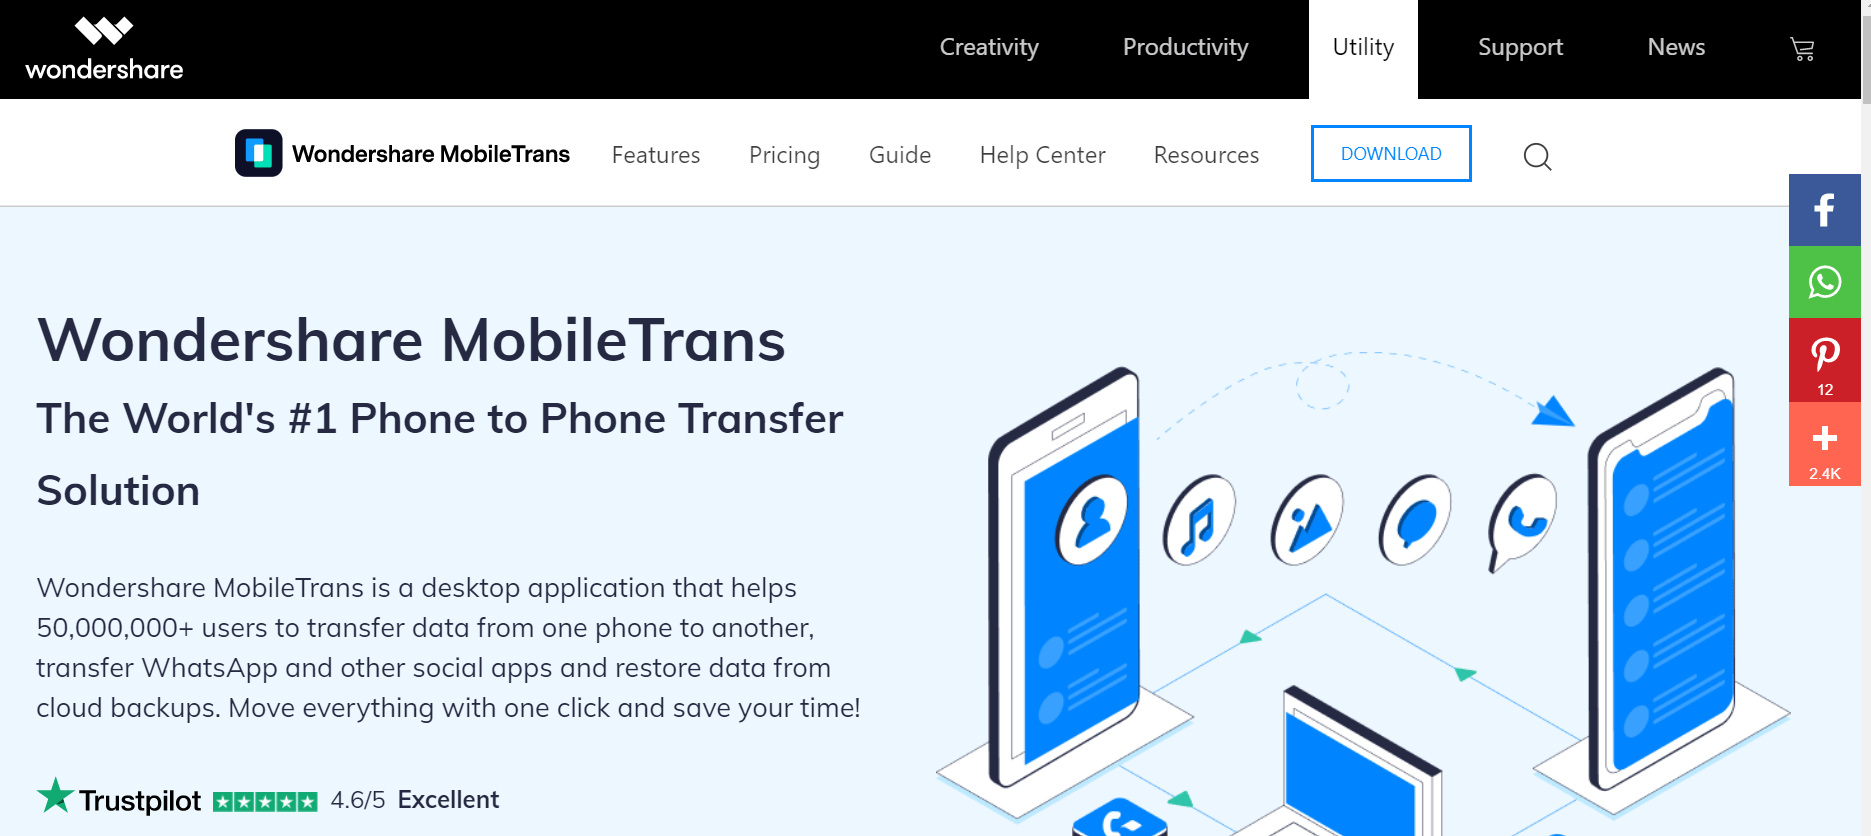 Wondershare MobileTrans v8.1.0 Crack Serial Number